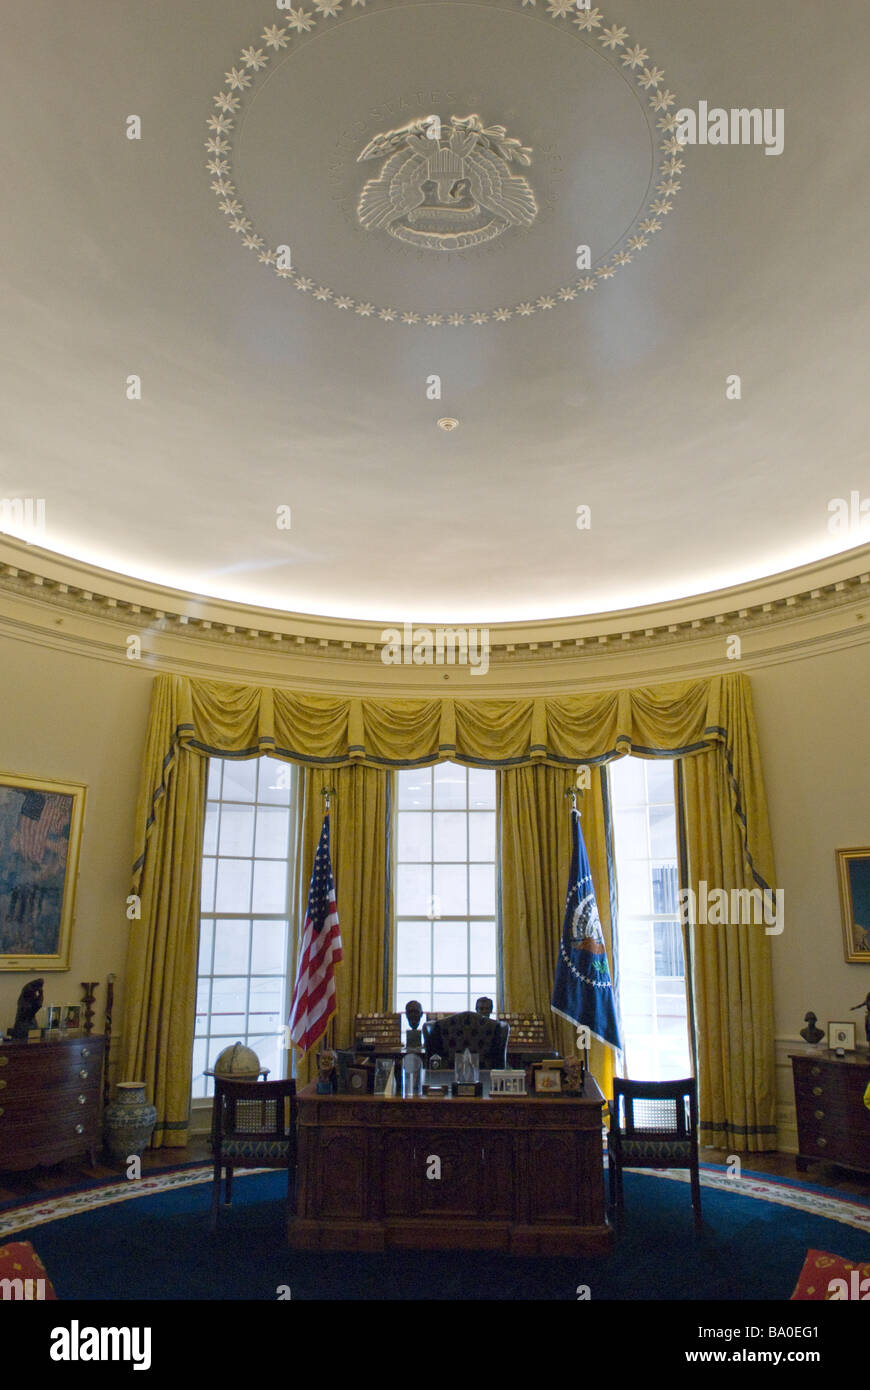 La Oficina Oval en la William J. Clinton Presidential Library y el museo en Little Rock, Arkansas. Foto de stock